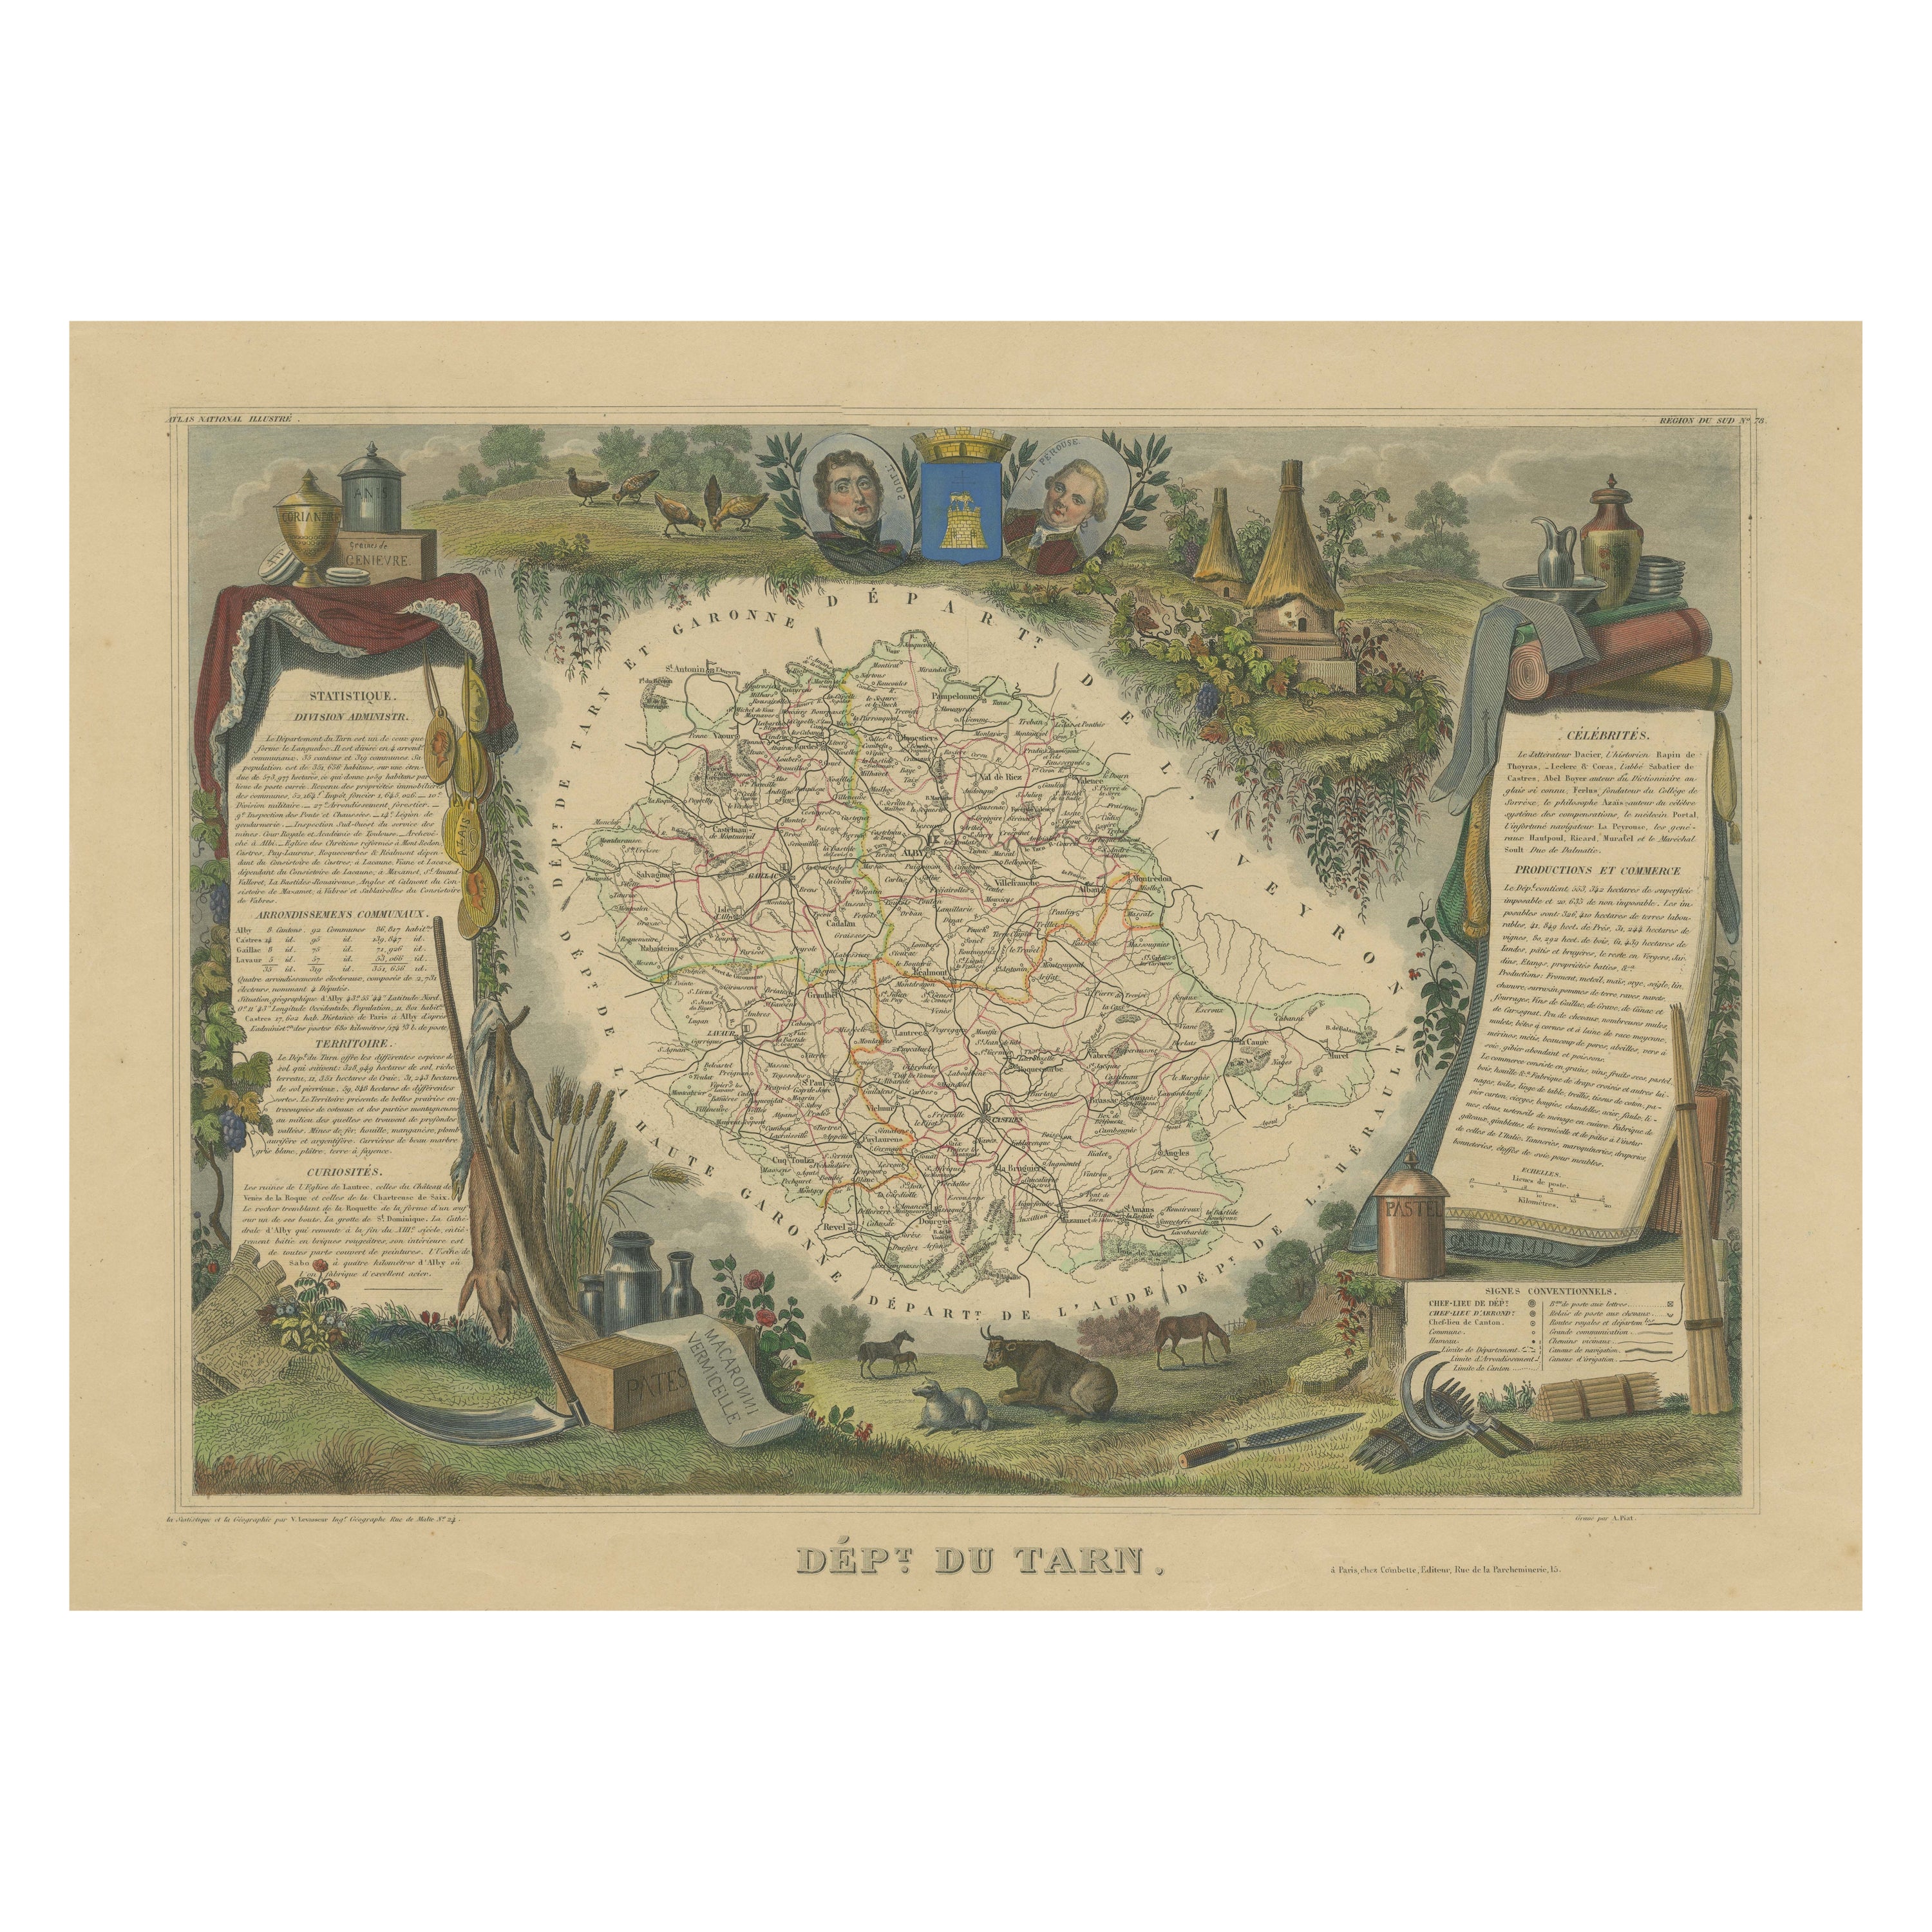 Carte ancienne coloriée à la main du département du Tarn, France, vers 1852